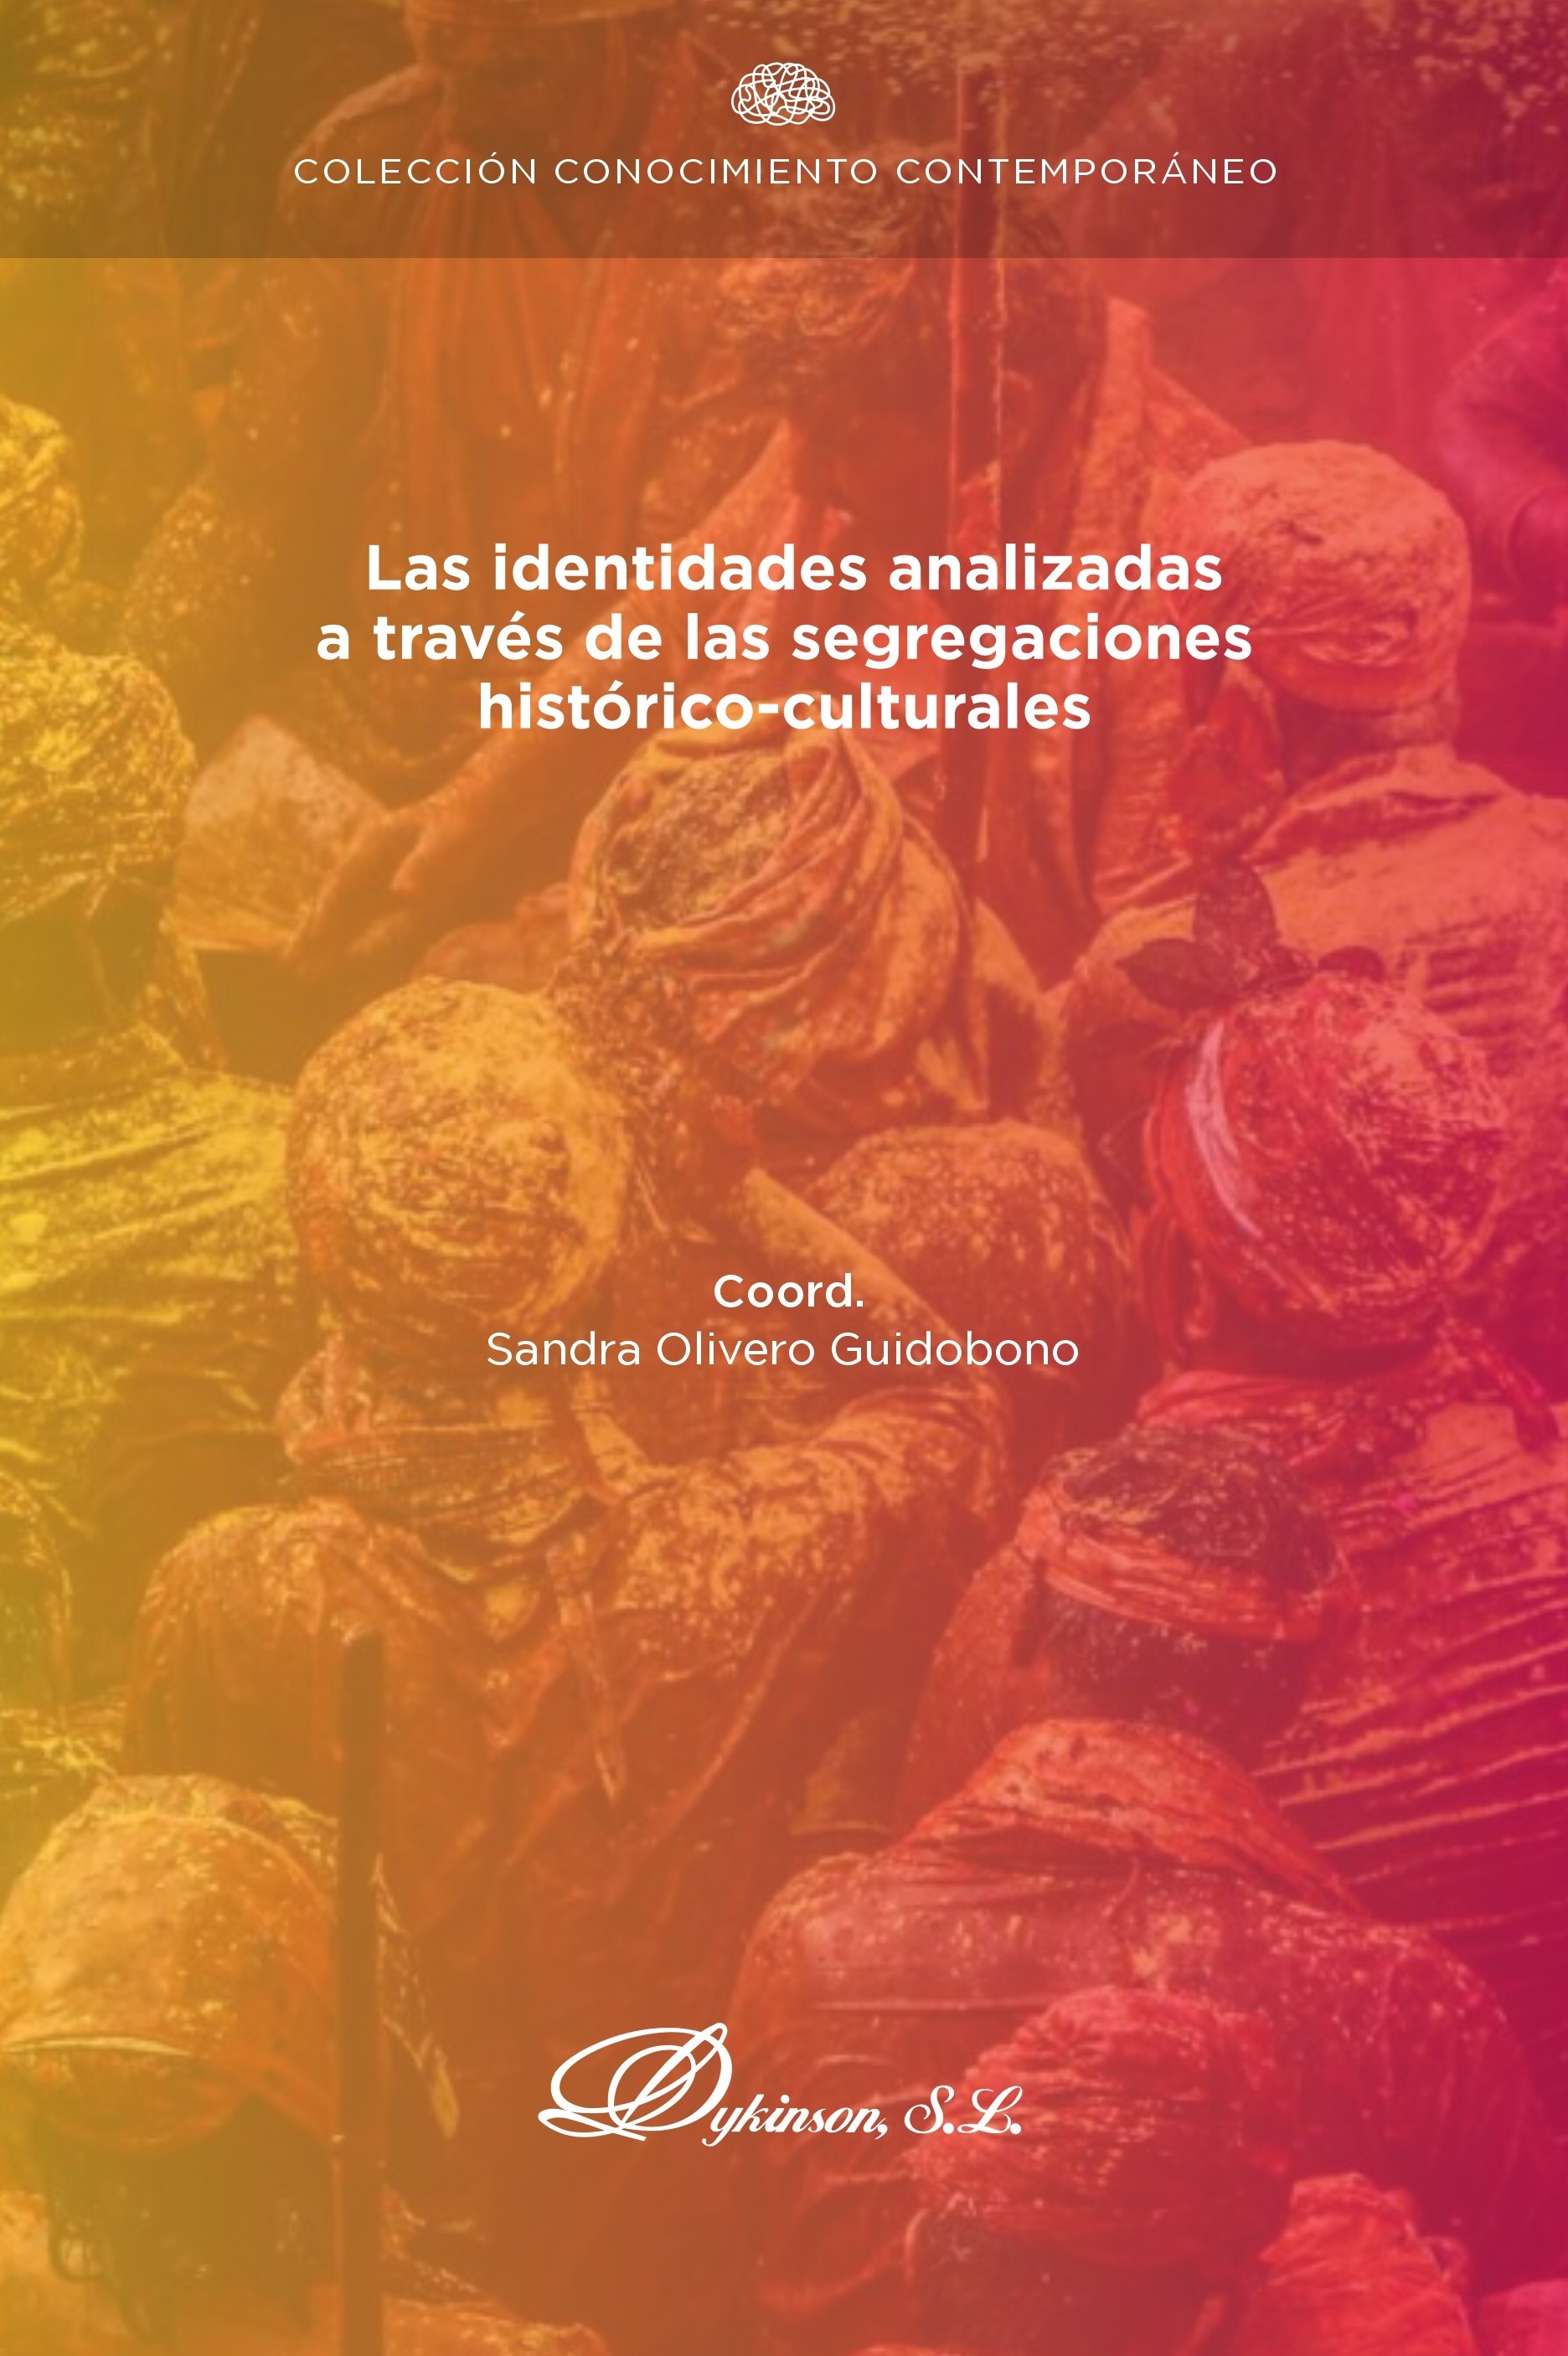 Imagen de portada del libro Las identidades analizadas a través de las segregaciones histórico-culturales